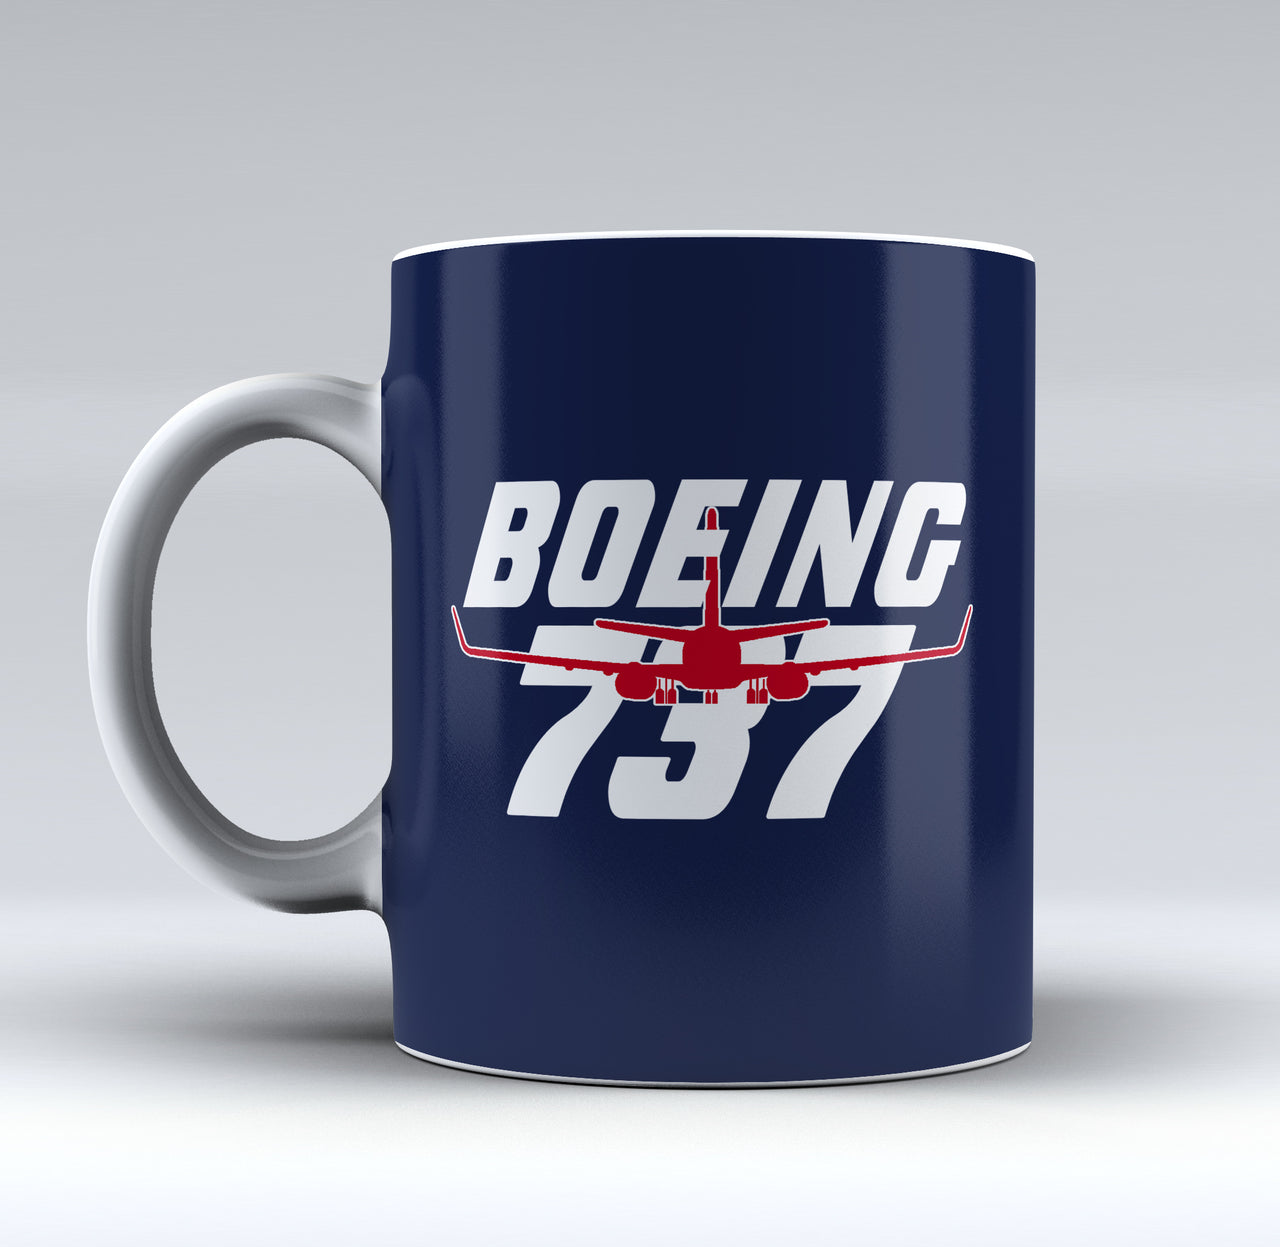 Amazing Boeing 737 Designed Mugs